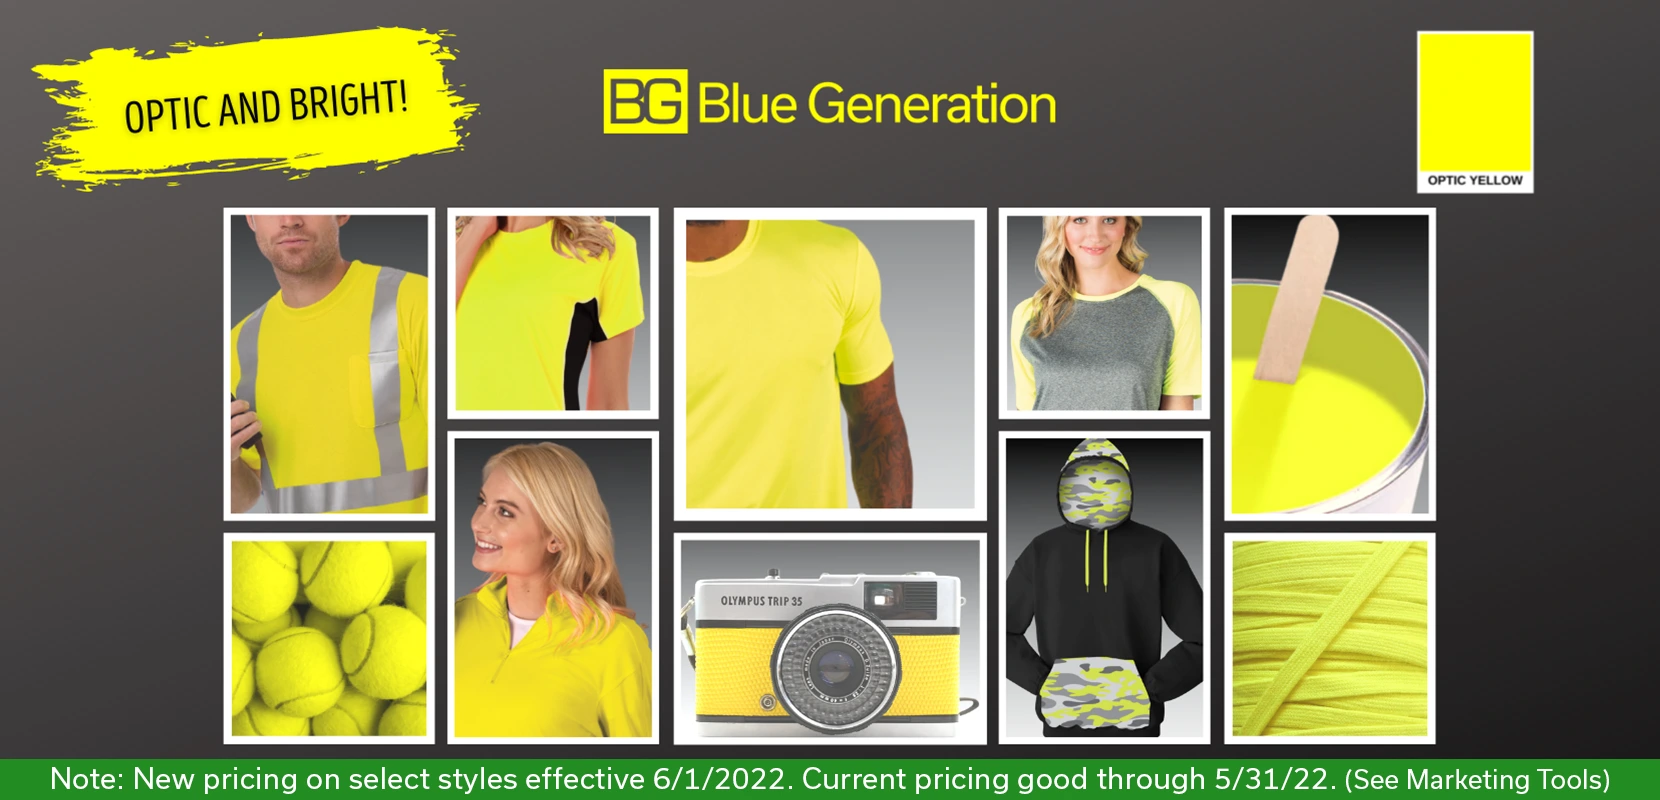 Blue Generation -  We've got your color!